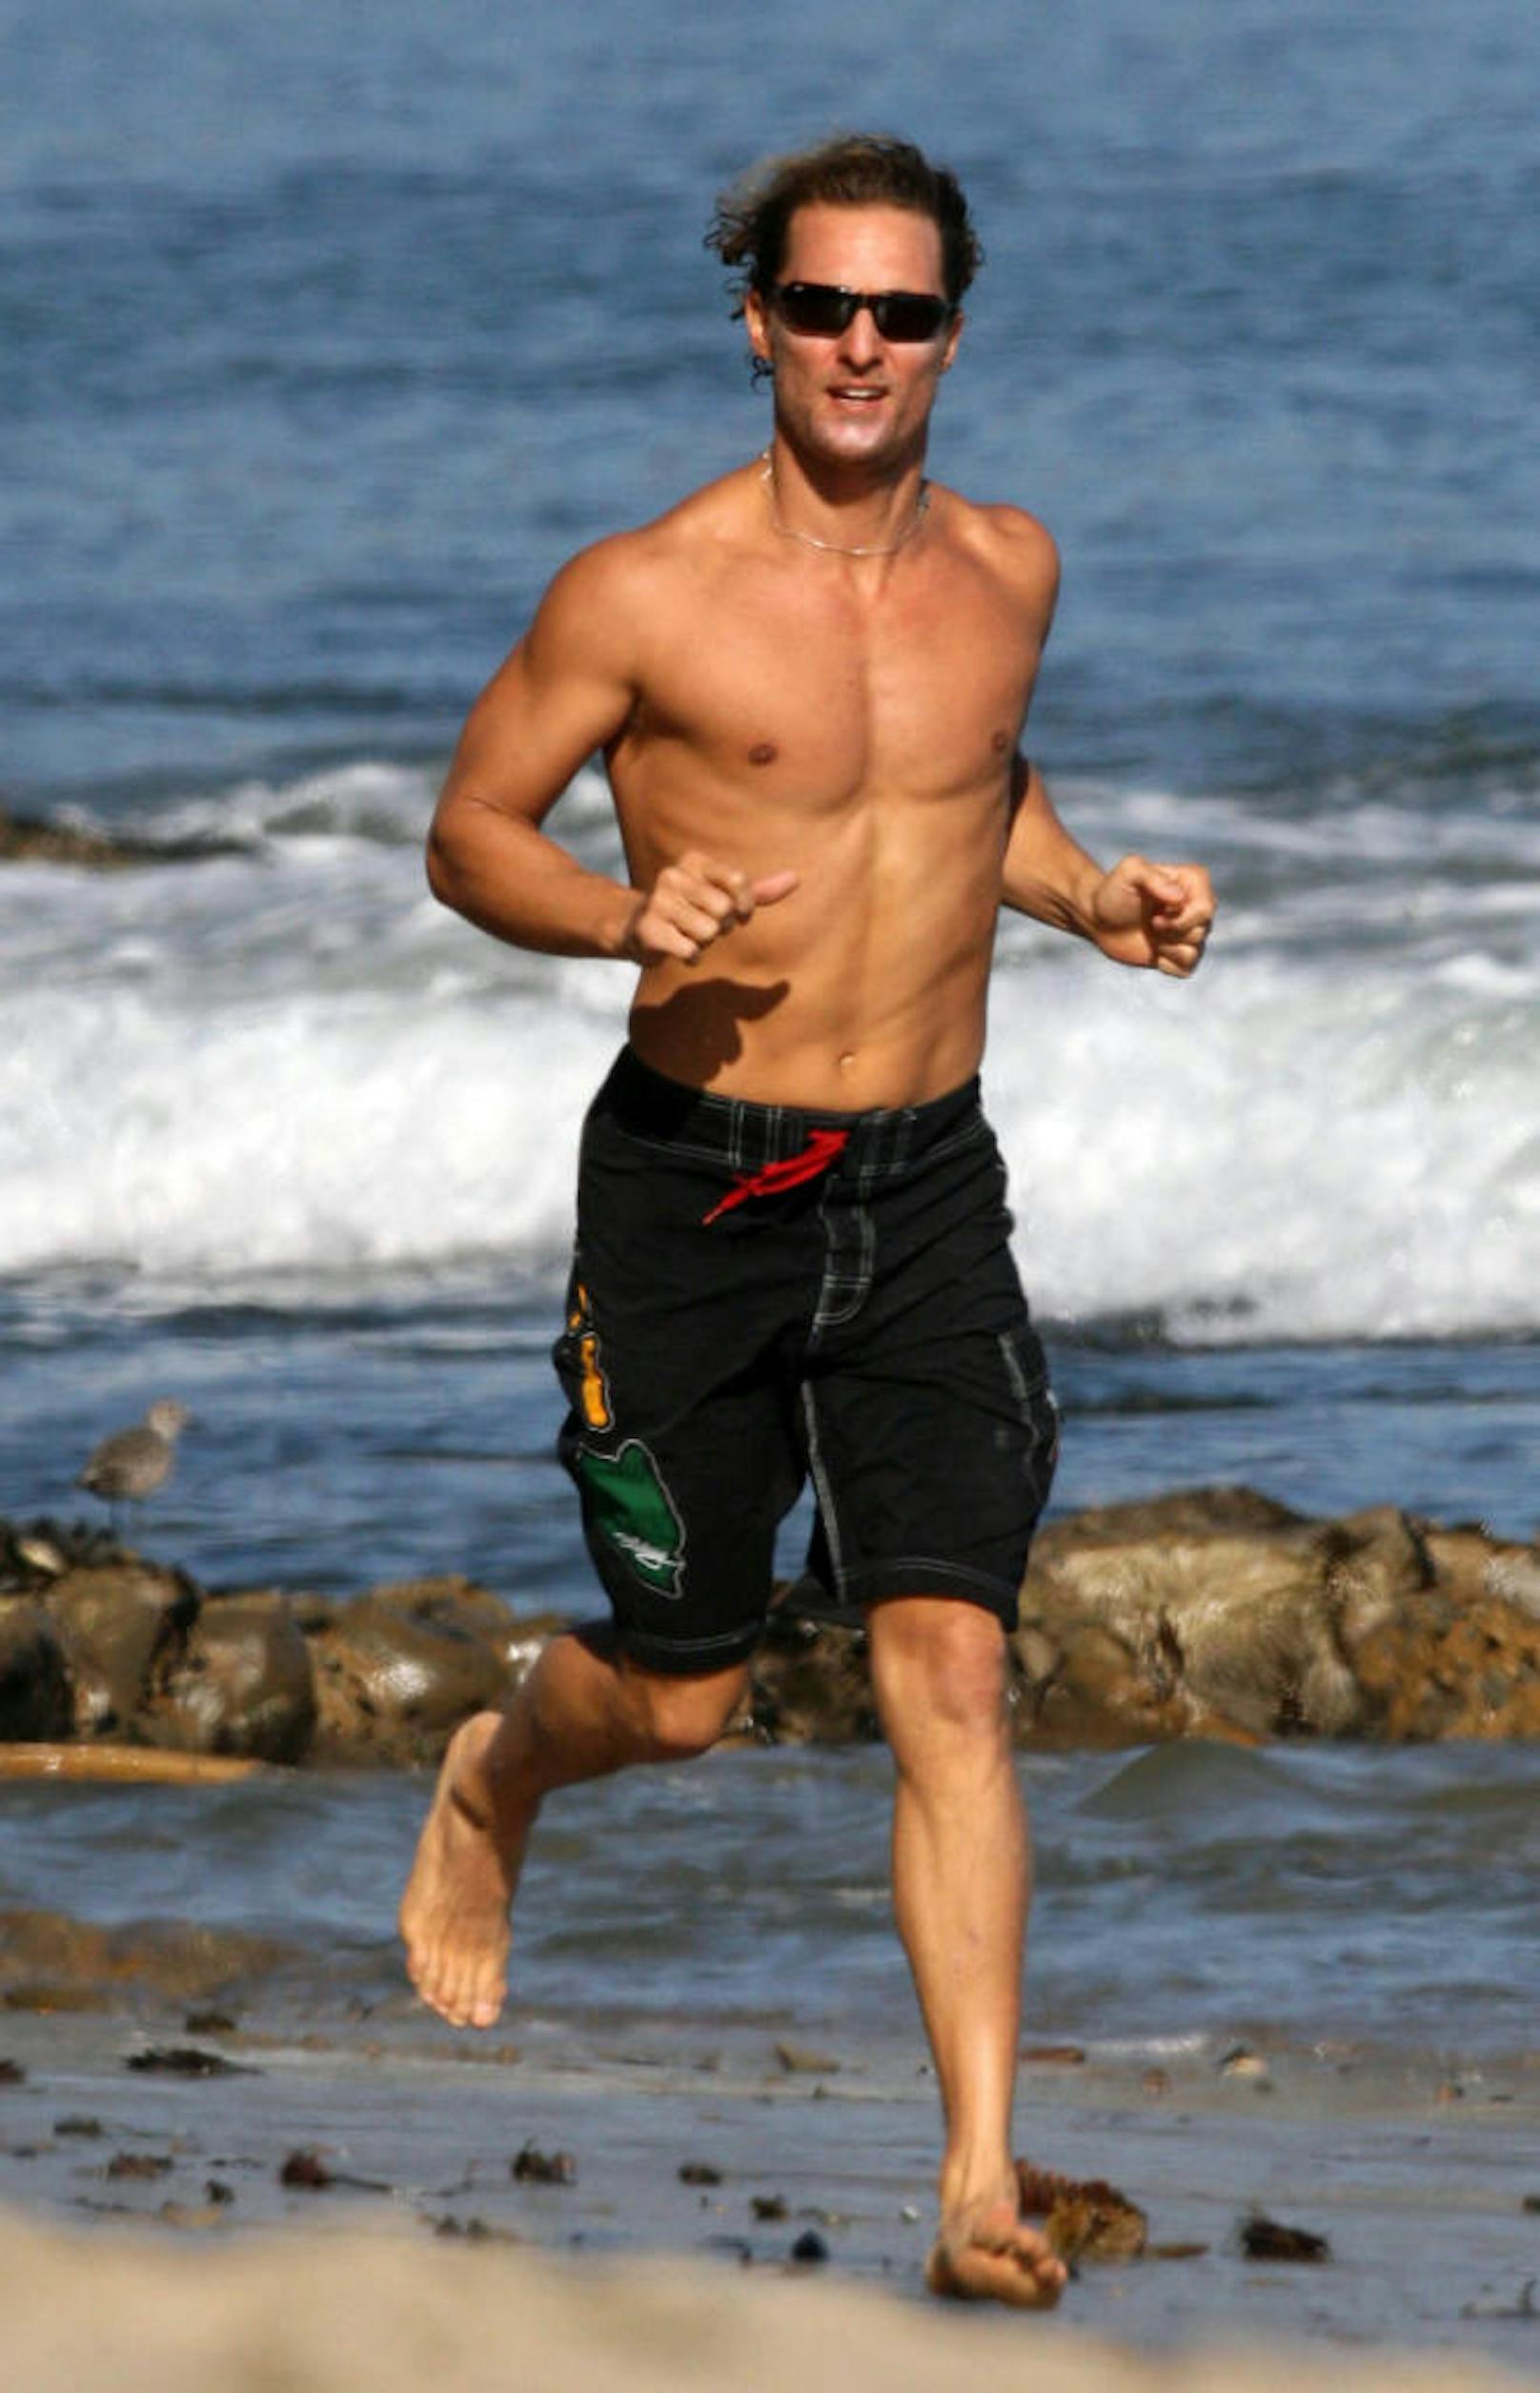 So kennt man Matthew McConaughey: "Sexiest Man Alive" (2005) am Strand von Malibu.